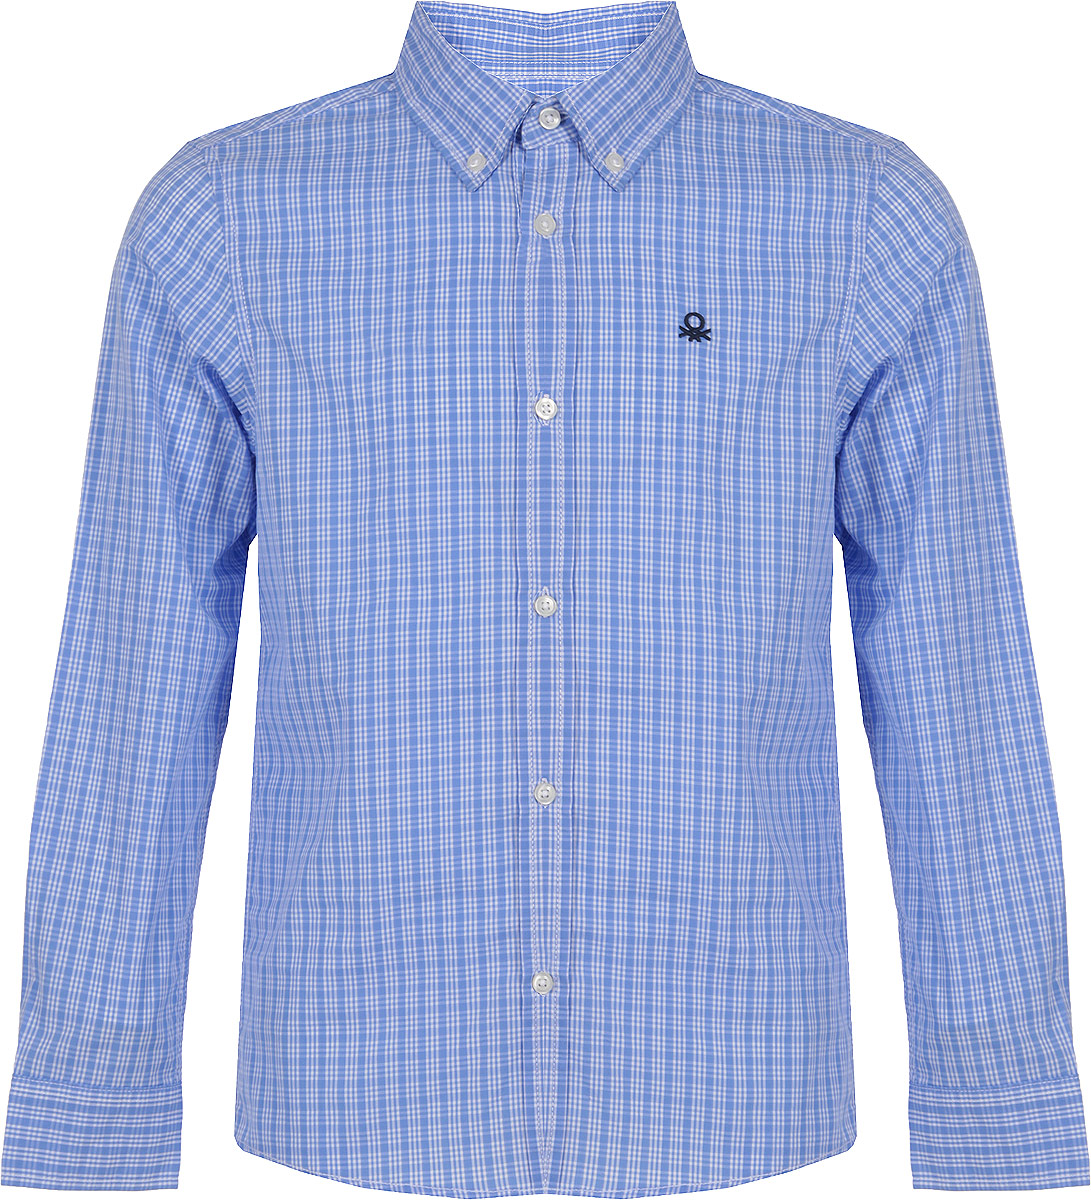 Рубашка для мальчика United Colors of Benetton, цвет: голубой. 5DU65Q200_991. Размер XL (150)